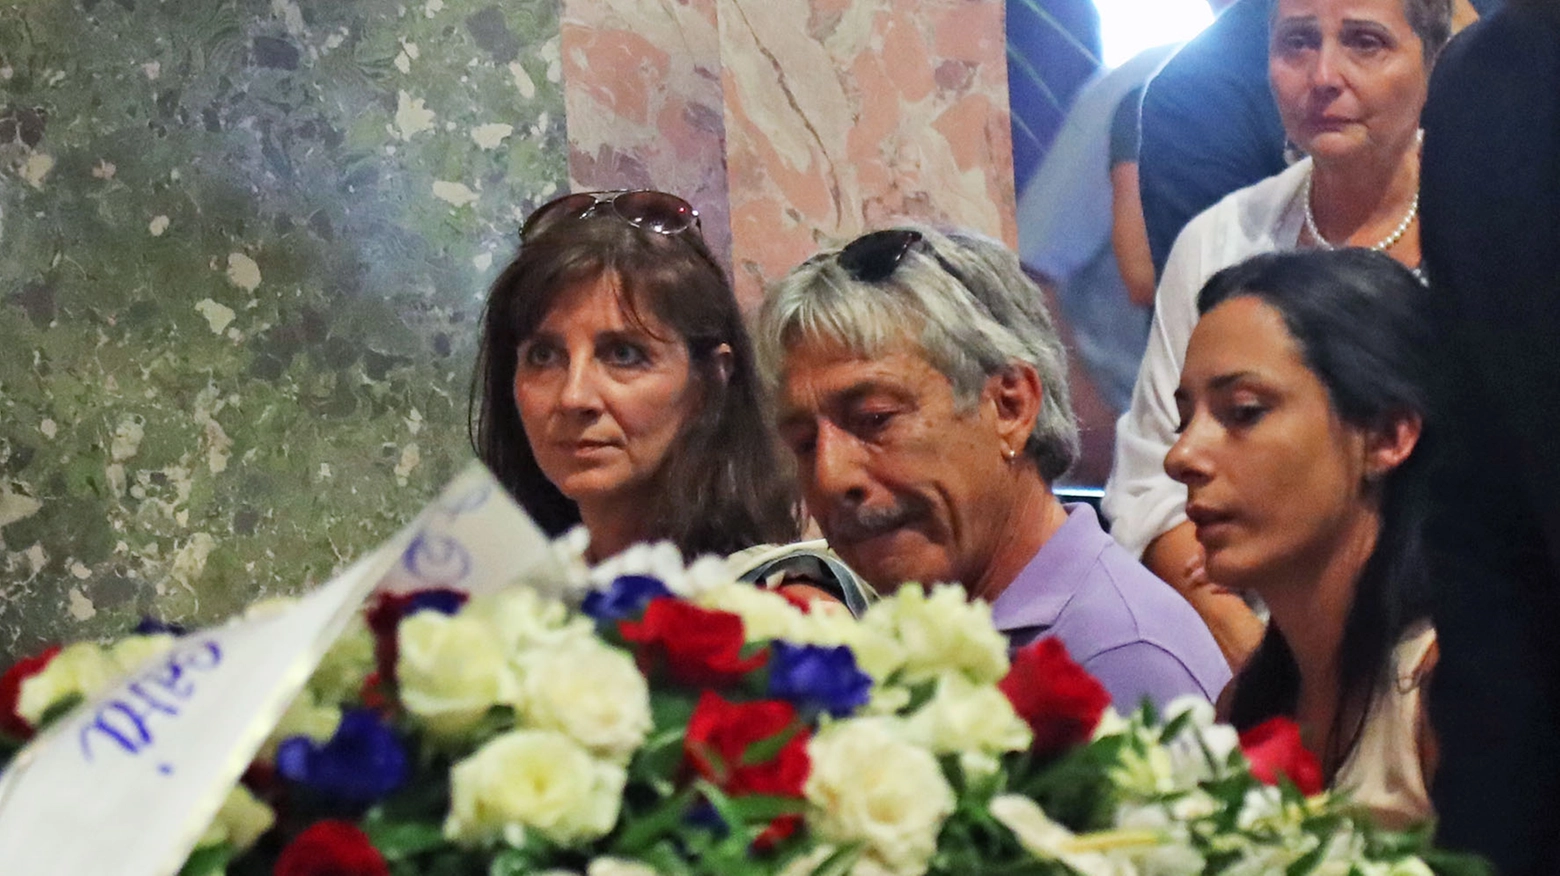 Le lacrime di Marco Lucchinelli durante il funerale del figlio (IsolaPress)